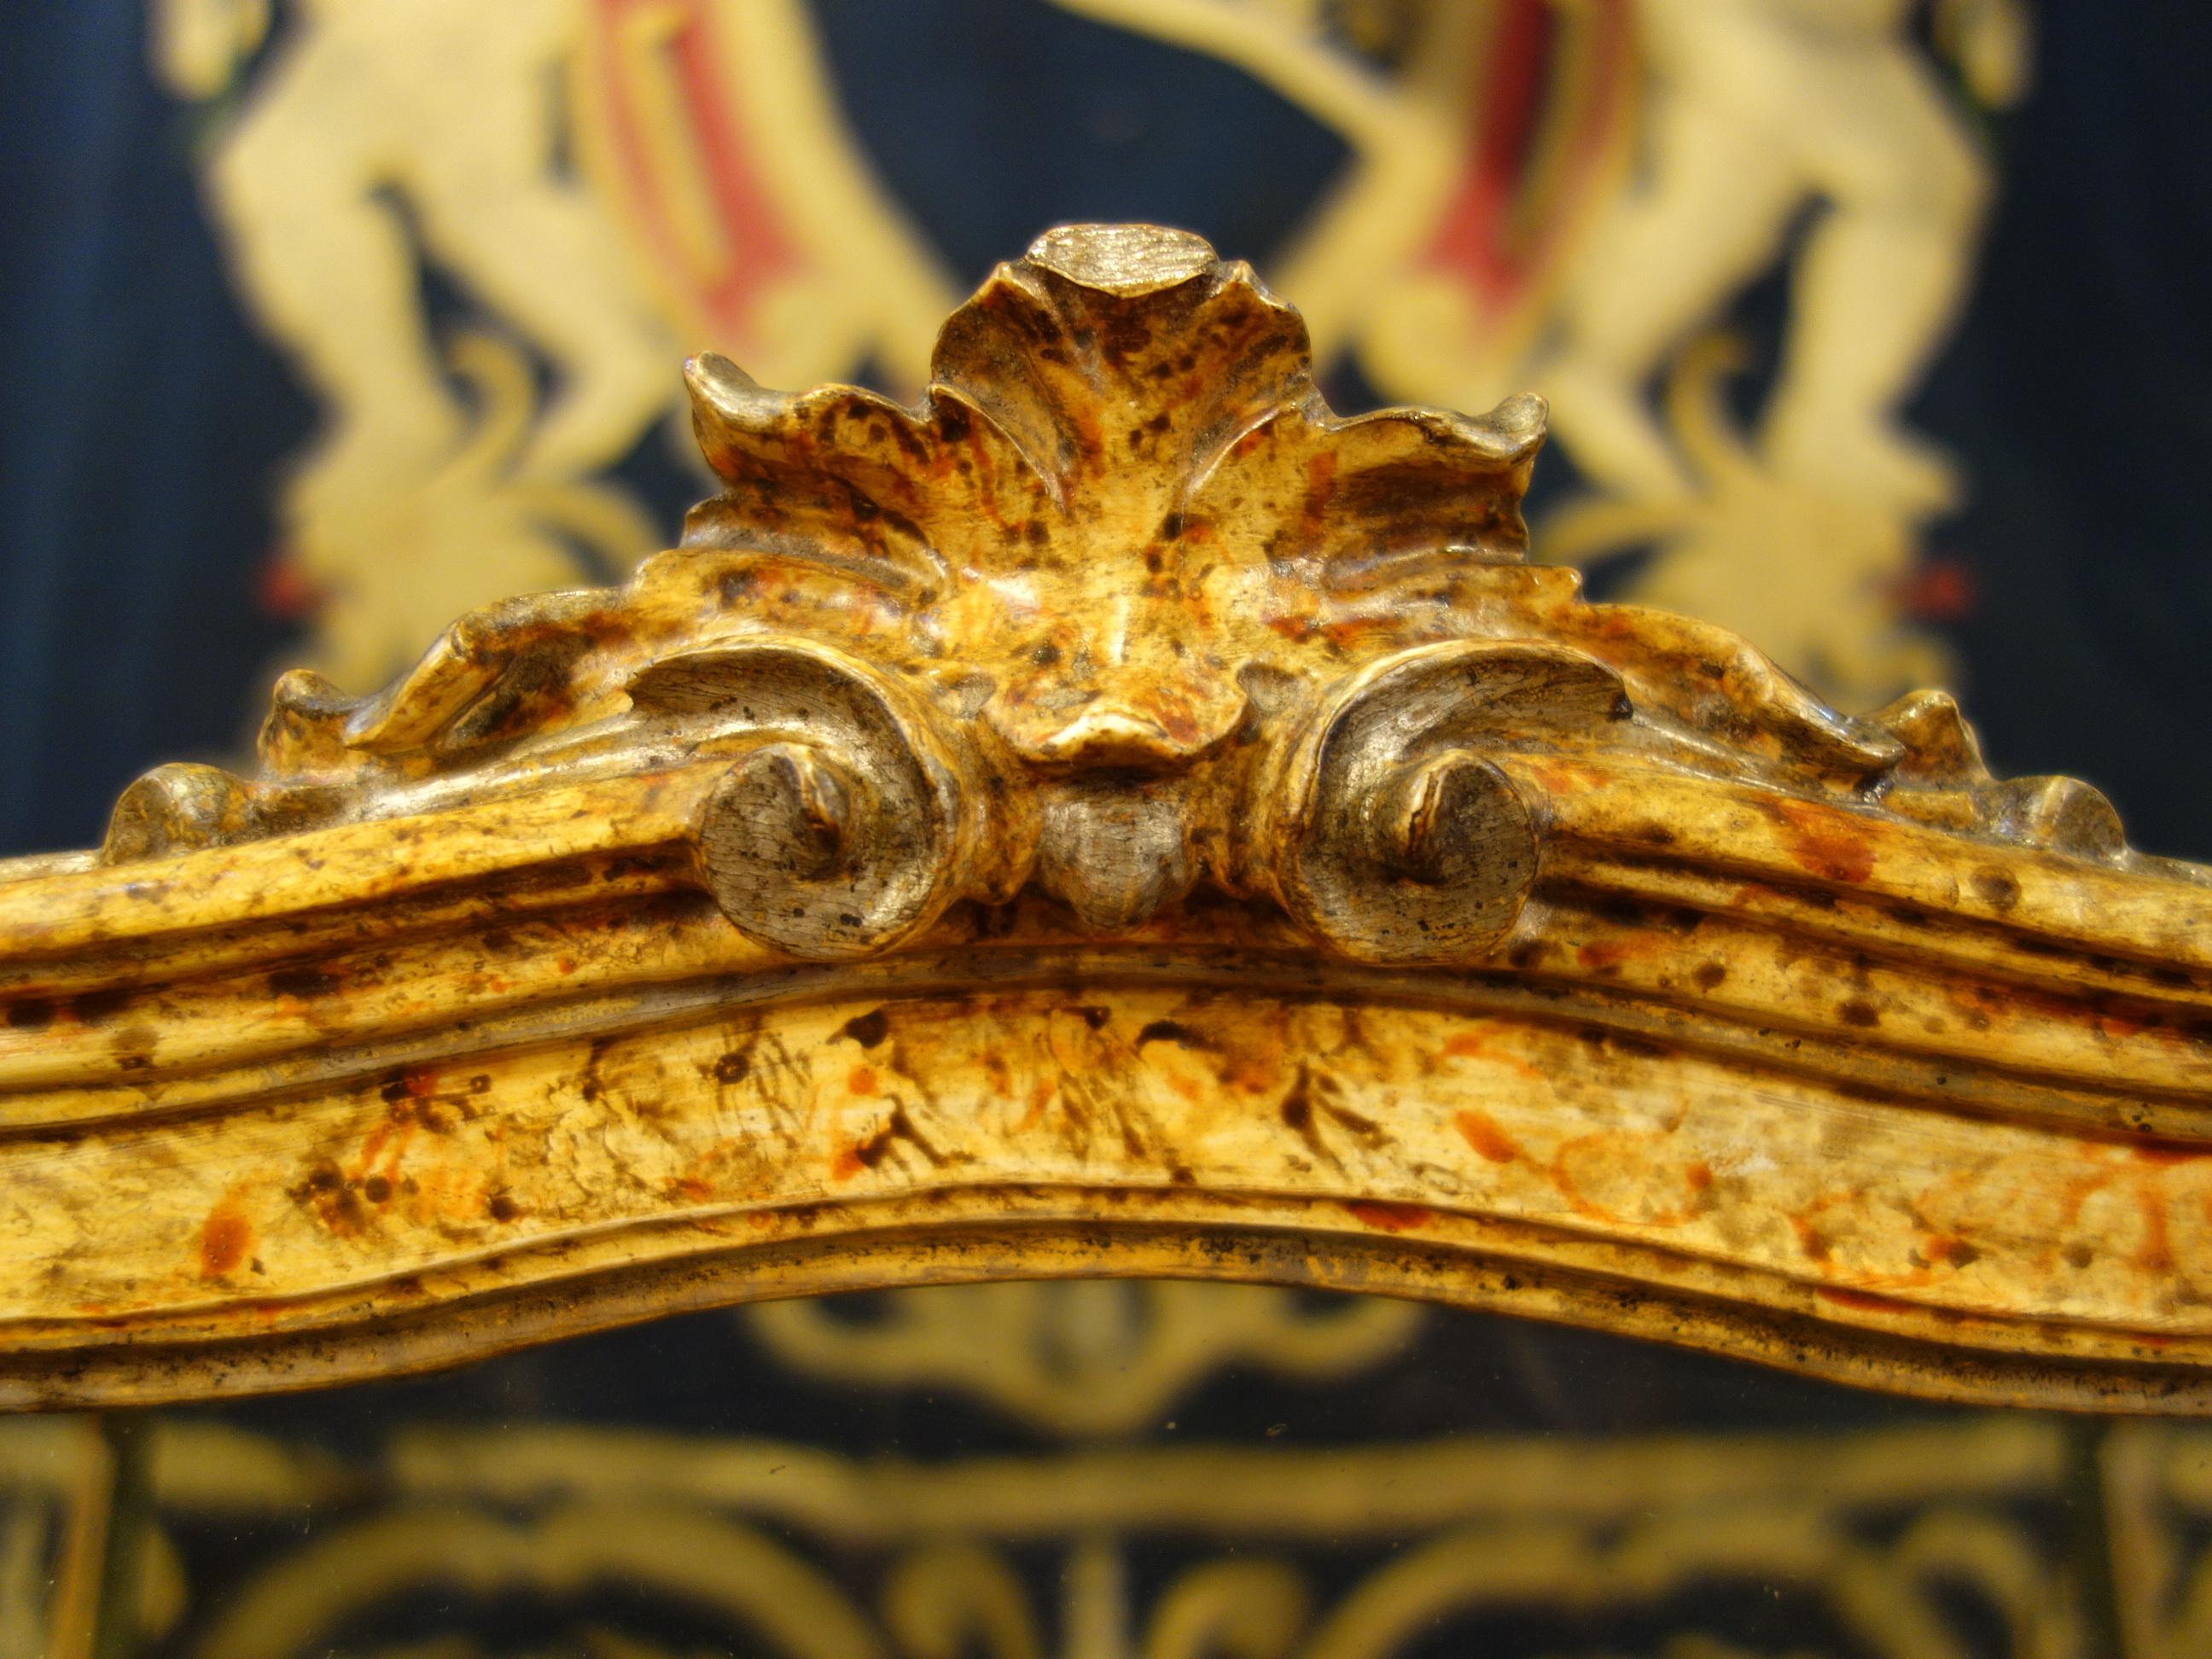 Eine elegante, detailreiche Holzvitrine aus dem späten 18. Jahrhundert im Stil Ludwigs XV, goldgelber Lack mit Blattsilberakzenten. Als Reliquienschrein oder Tabernakel diente das Kästchen möglicherweise zur Ausstellung oder Aufbewahrung religiöser